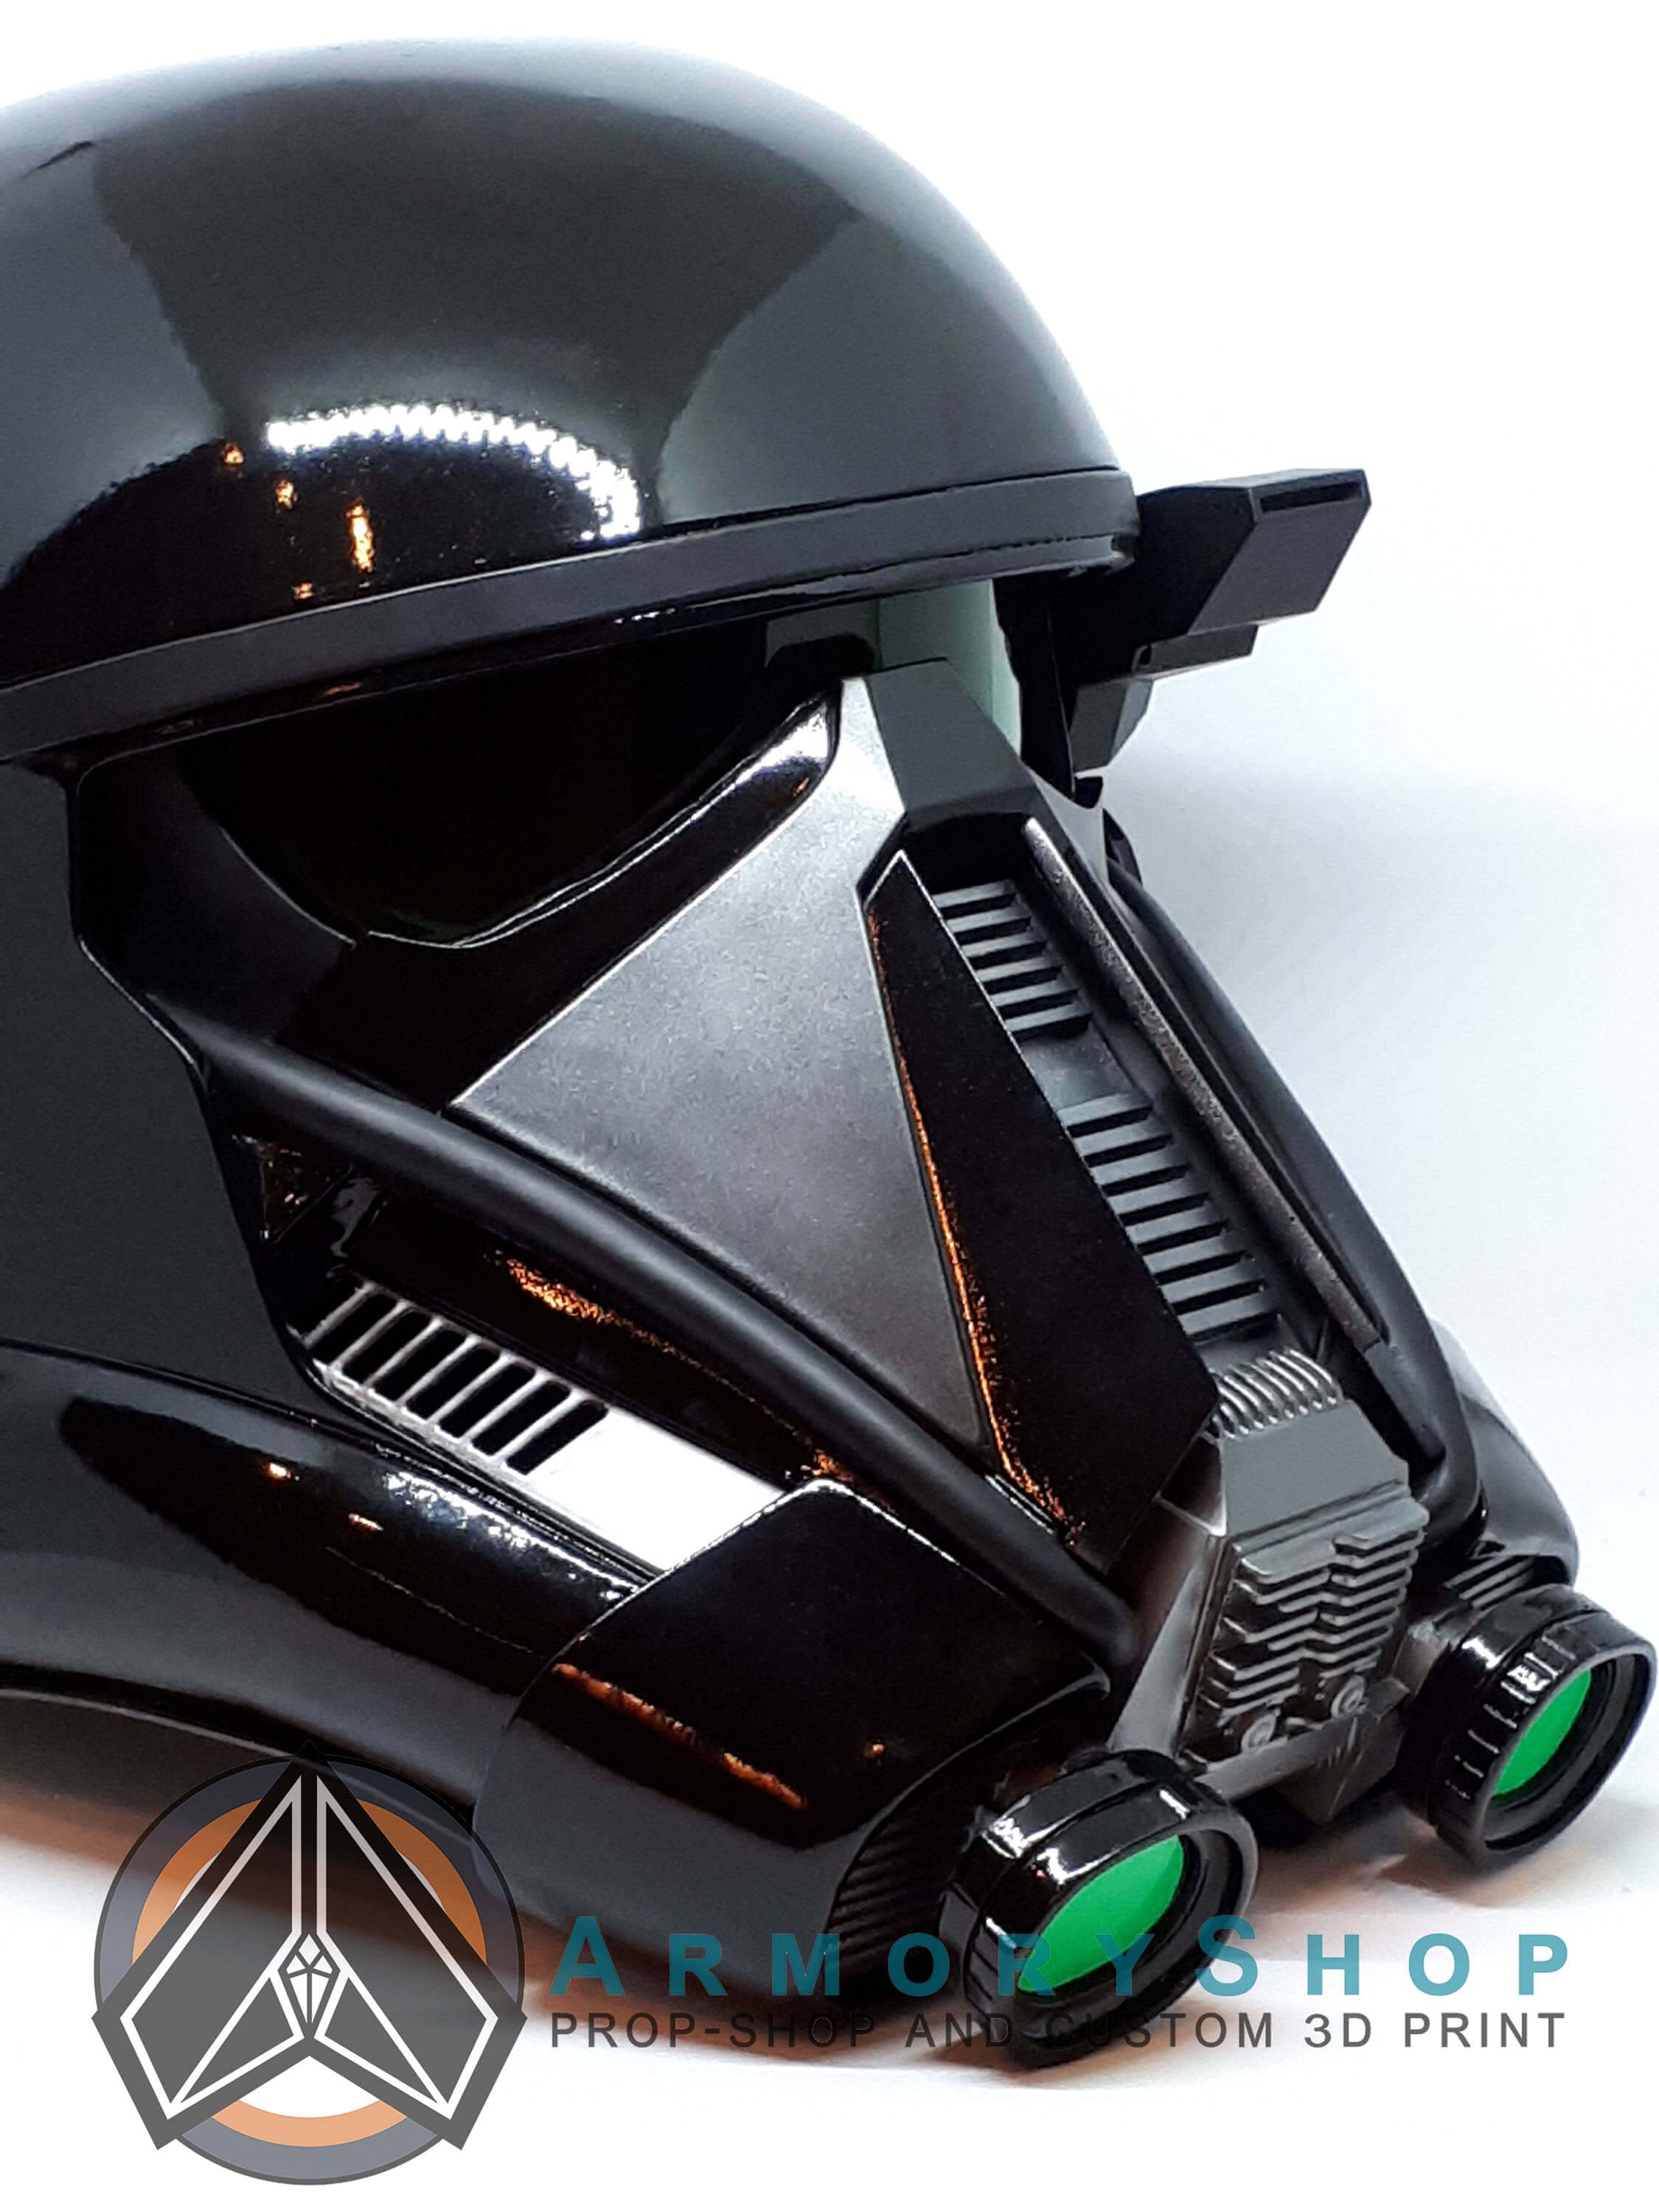 DeathTrooper helmet